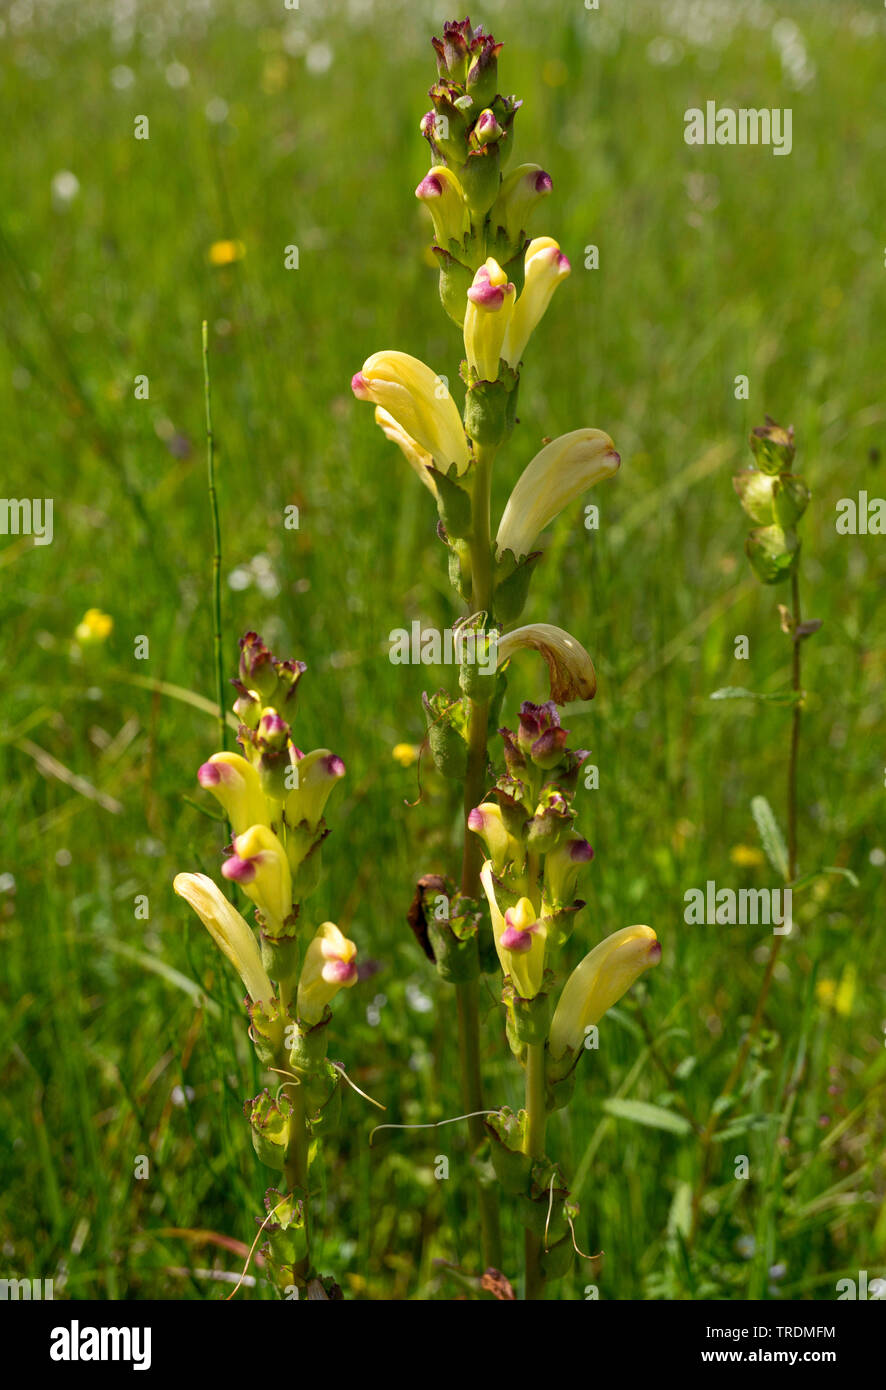 Moor-king, Moorking, Moor-king Lousewort, King Charles sceptre (Pedicularis sceptrum-carolinum), blooming, Germany, Bavaria, Murnauer Moos Stock Photo